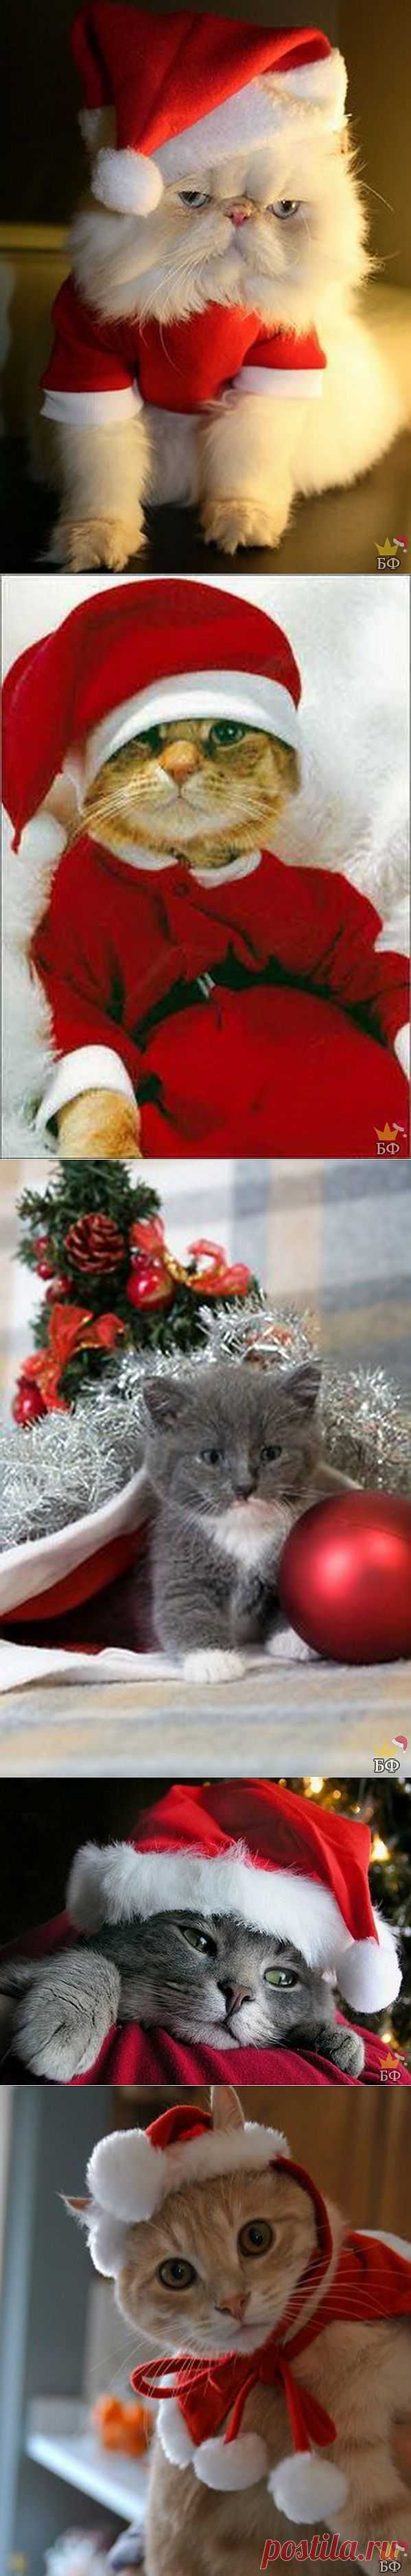 Новогодние коты » BezFishki.net - Страницы позитива. Ежедневно обновляемый развлекательный портал. Самые лучшие картинки и фото. Без фишки нет